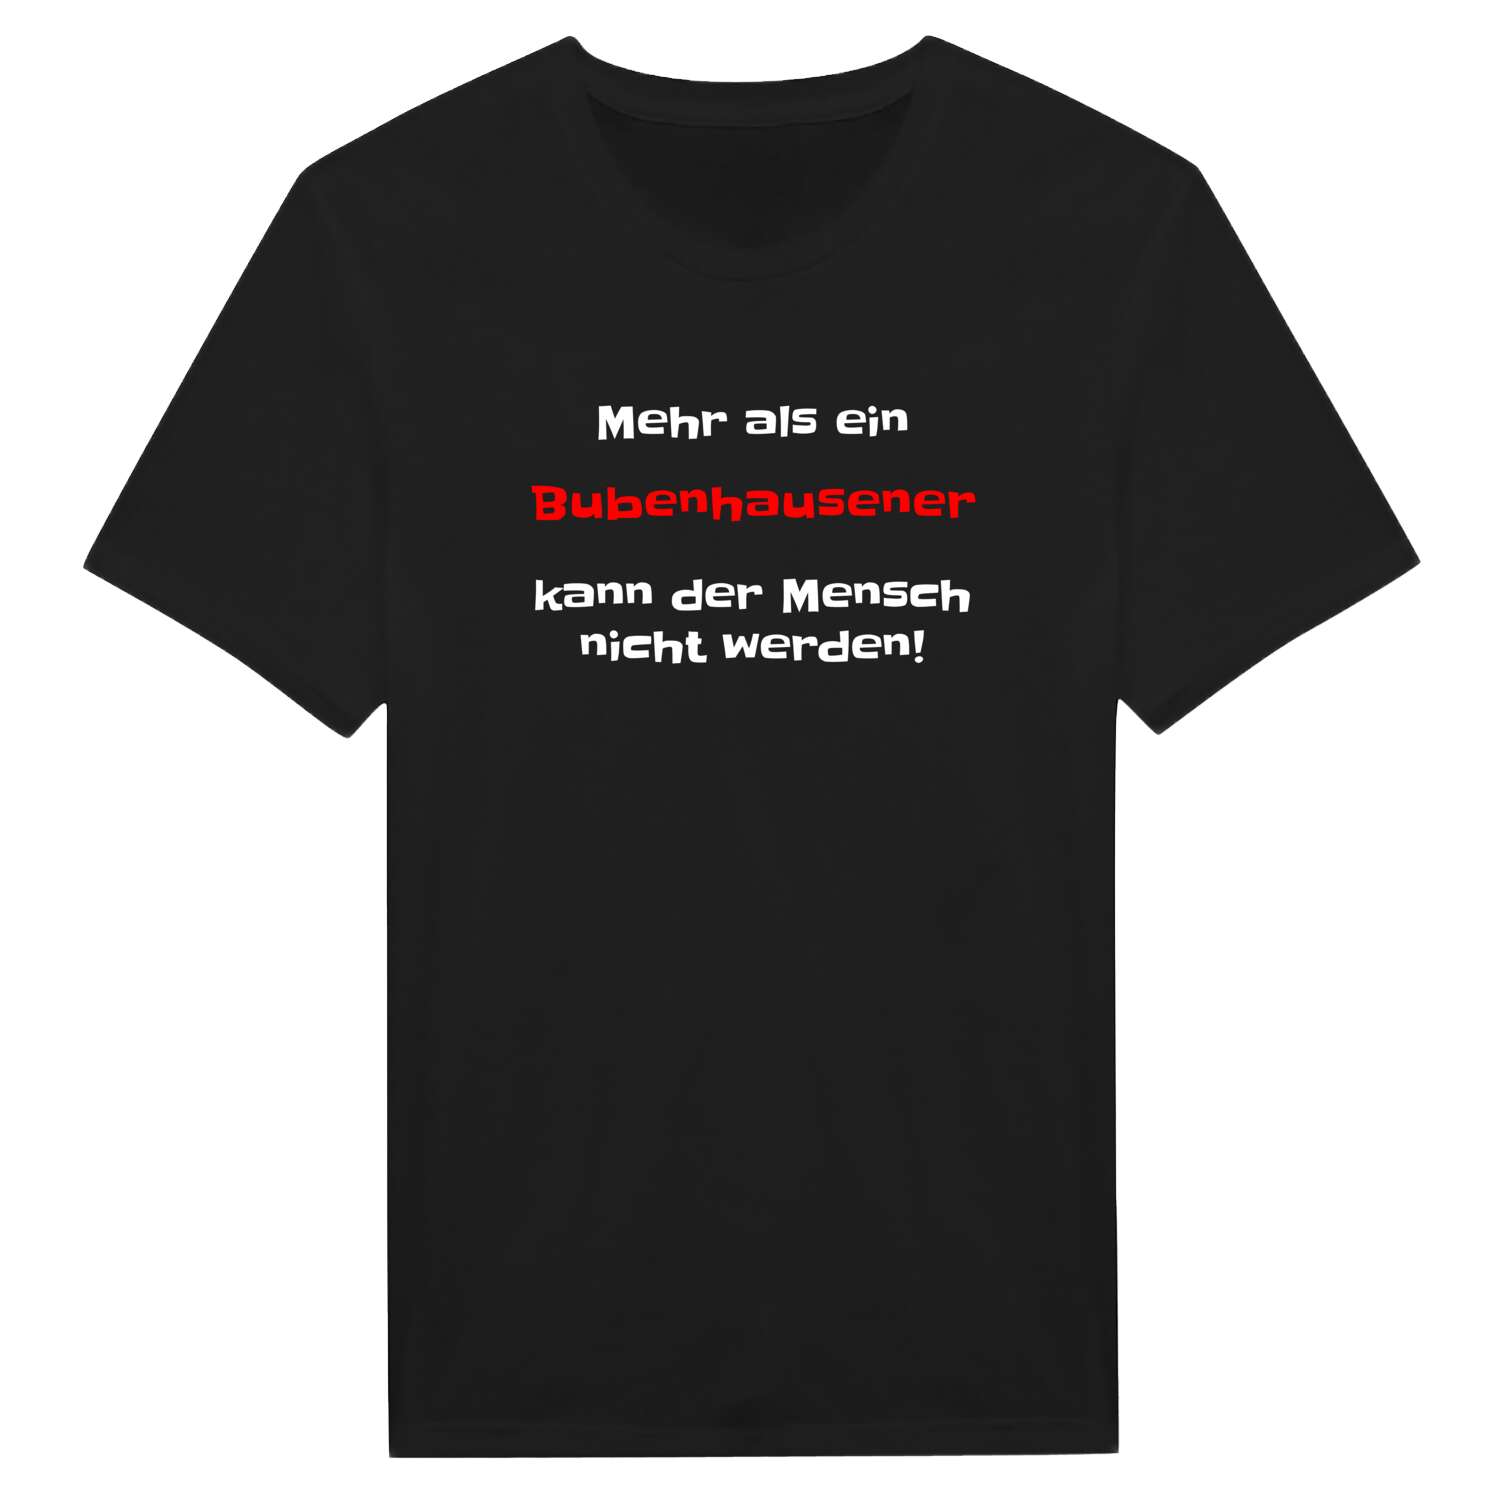 Bubenhausen T-Shirt »Mehr als ein«